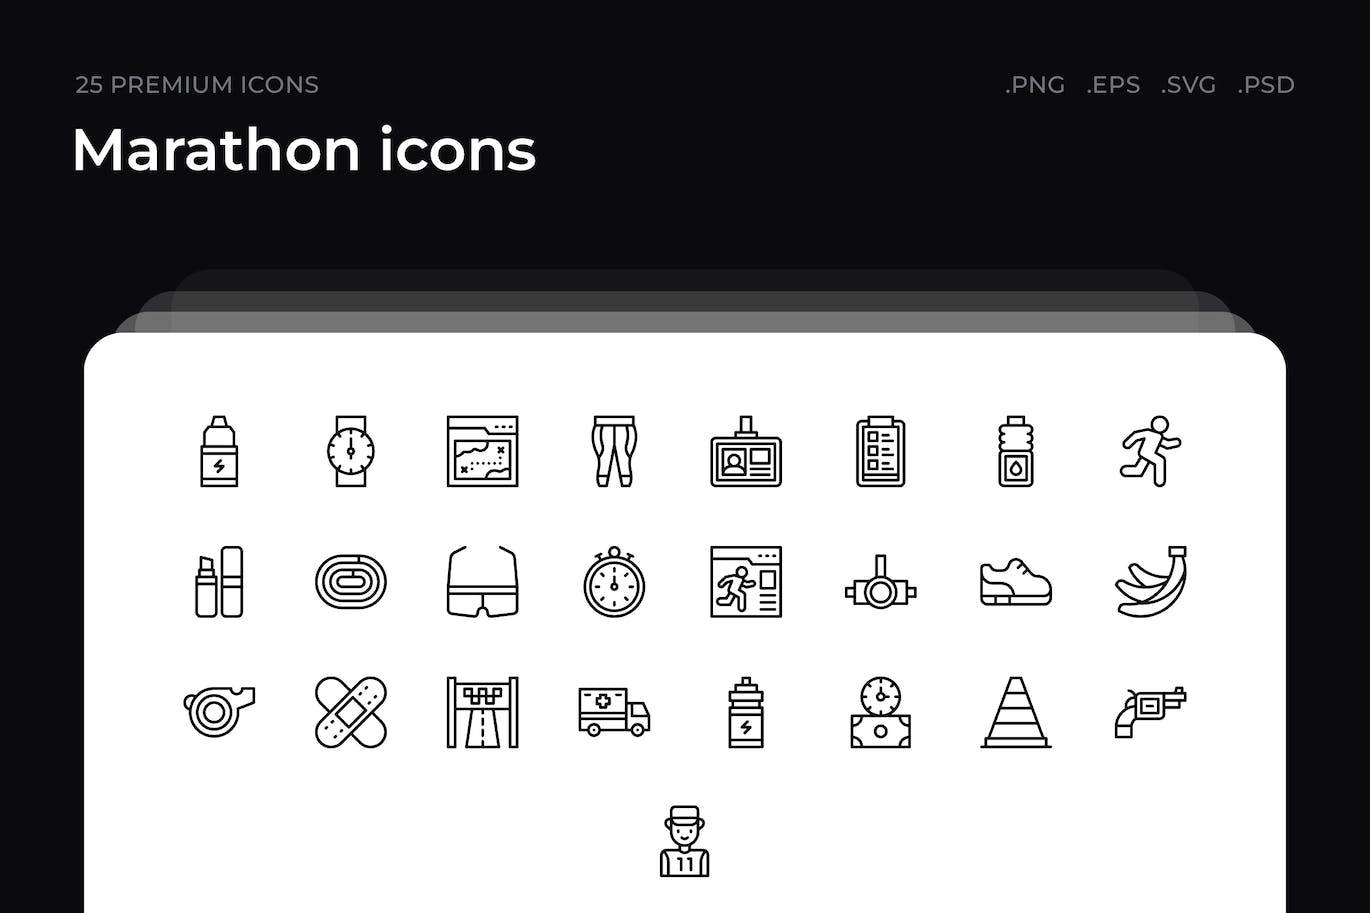 25枚马拉松赛跑主题简约线条矢量图标 Marathon icons 图标素材 第1张